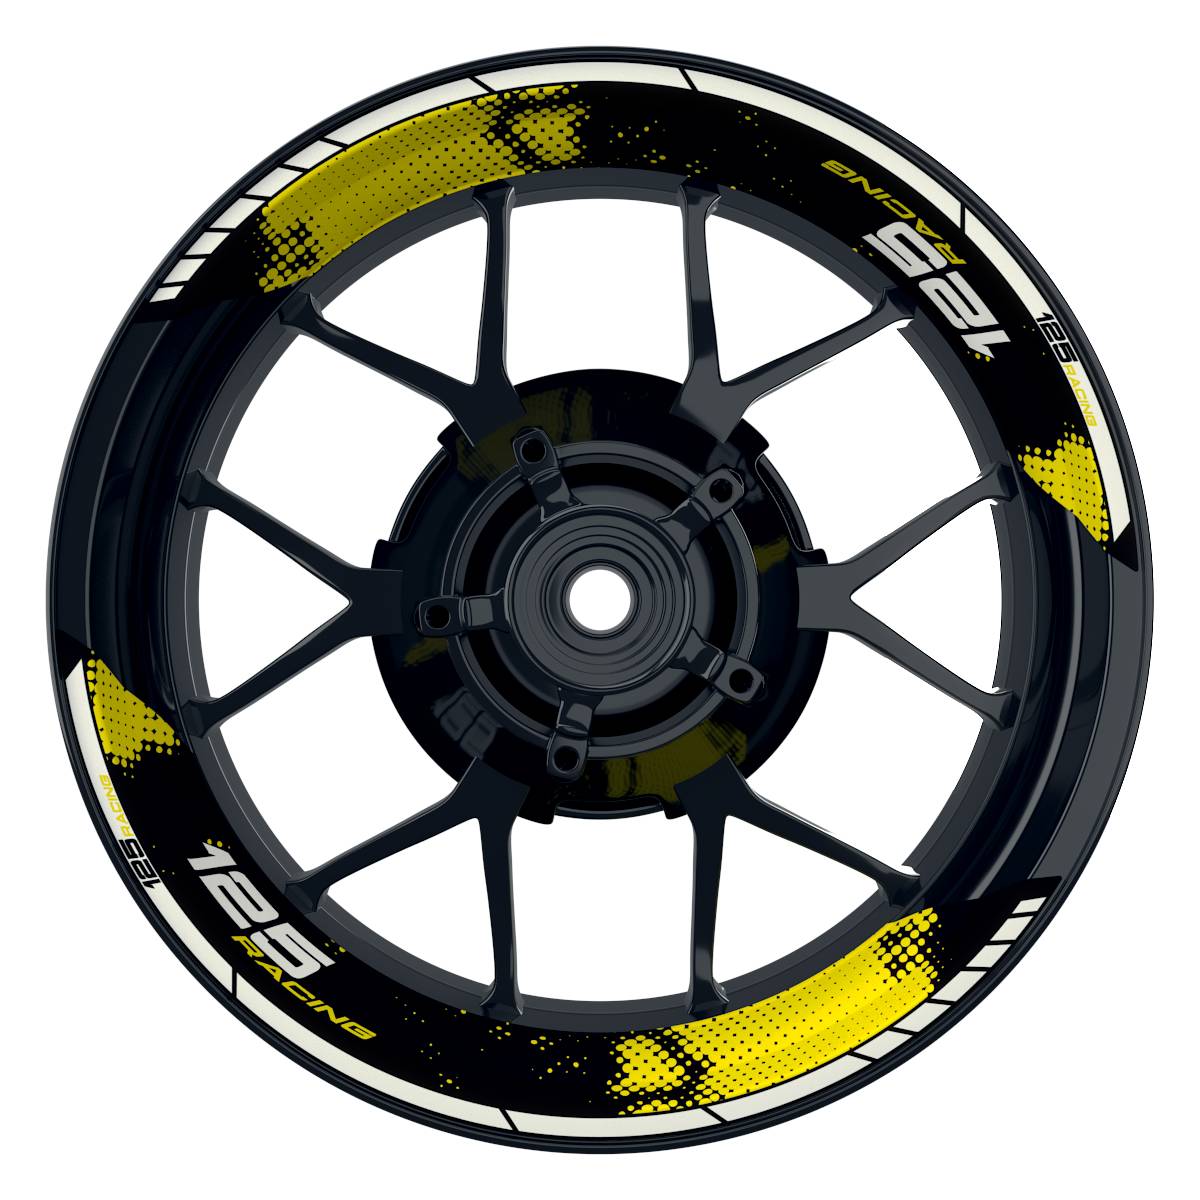 KTM Racing 125 Dots schwarz gelb Frontansicht